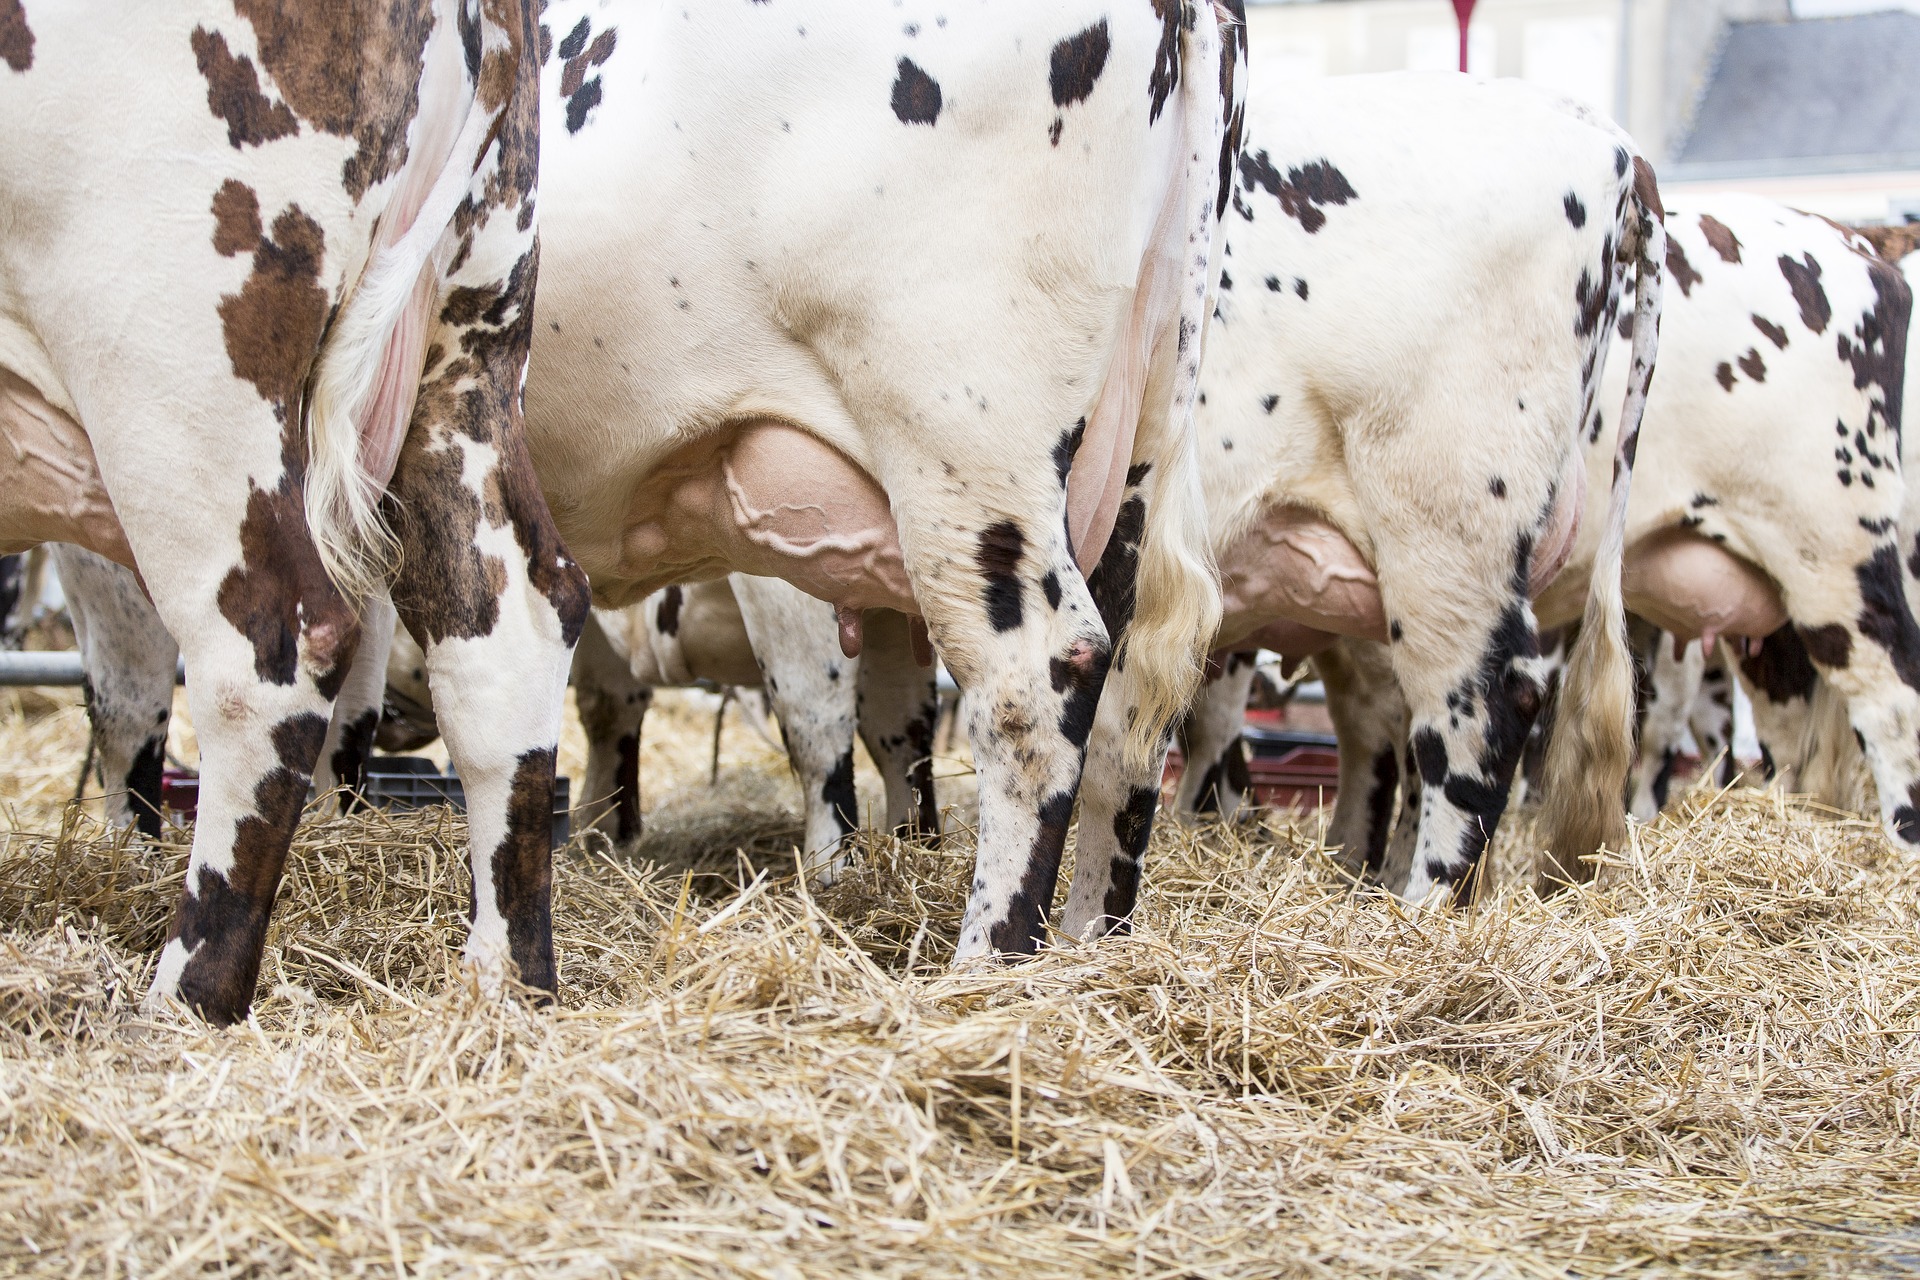 Prezzo del latte, Roldi: “Garantire i produttori che hanno subito pesantissimi rincari”